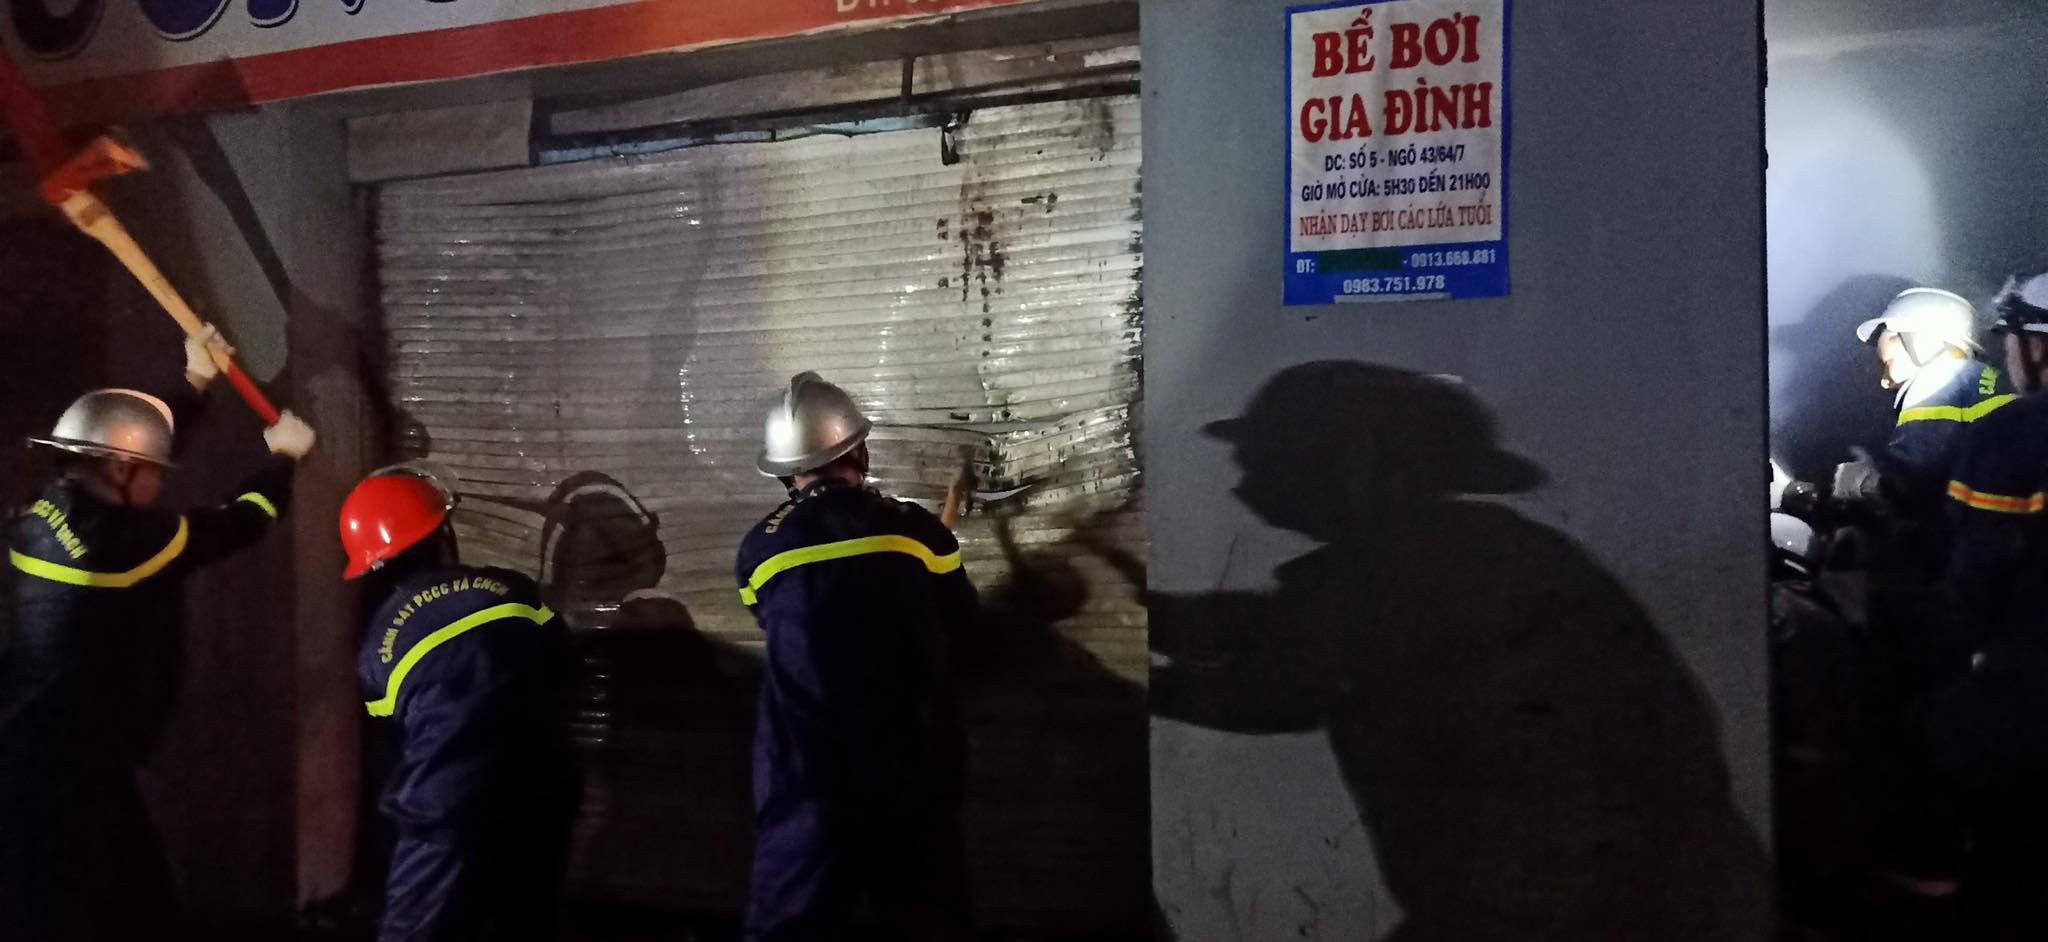 Cảnh sát cứu 4 người mắc kẹt trong cửa hàng bốc cháy ở Hà Nội - 1